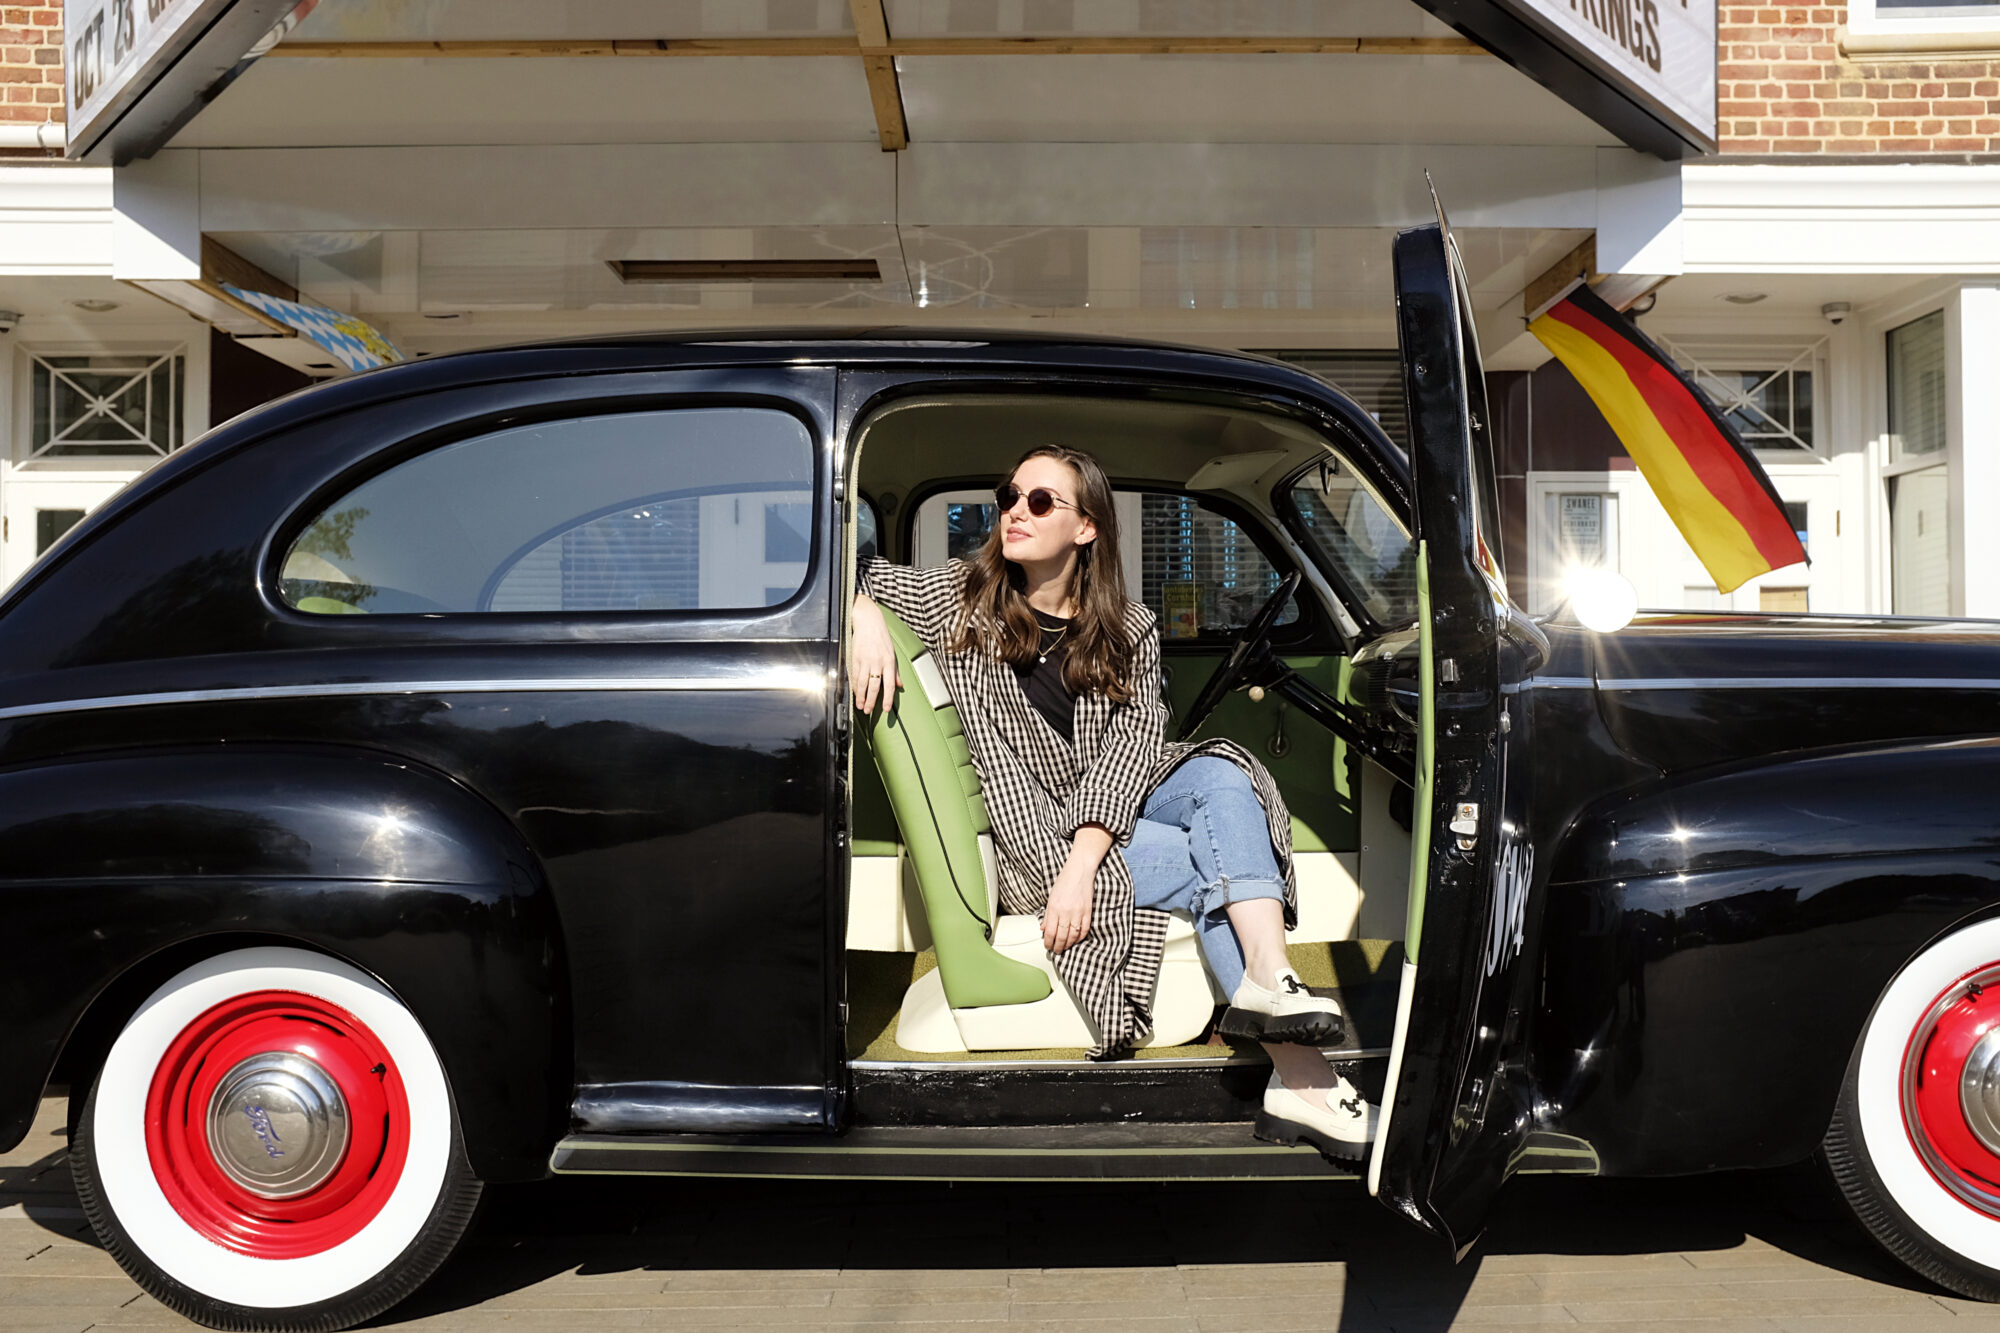 Alyssa sits in a vintage car